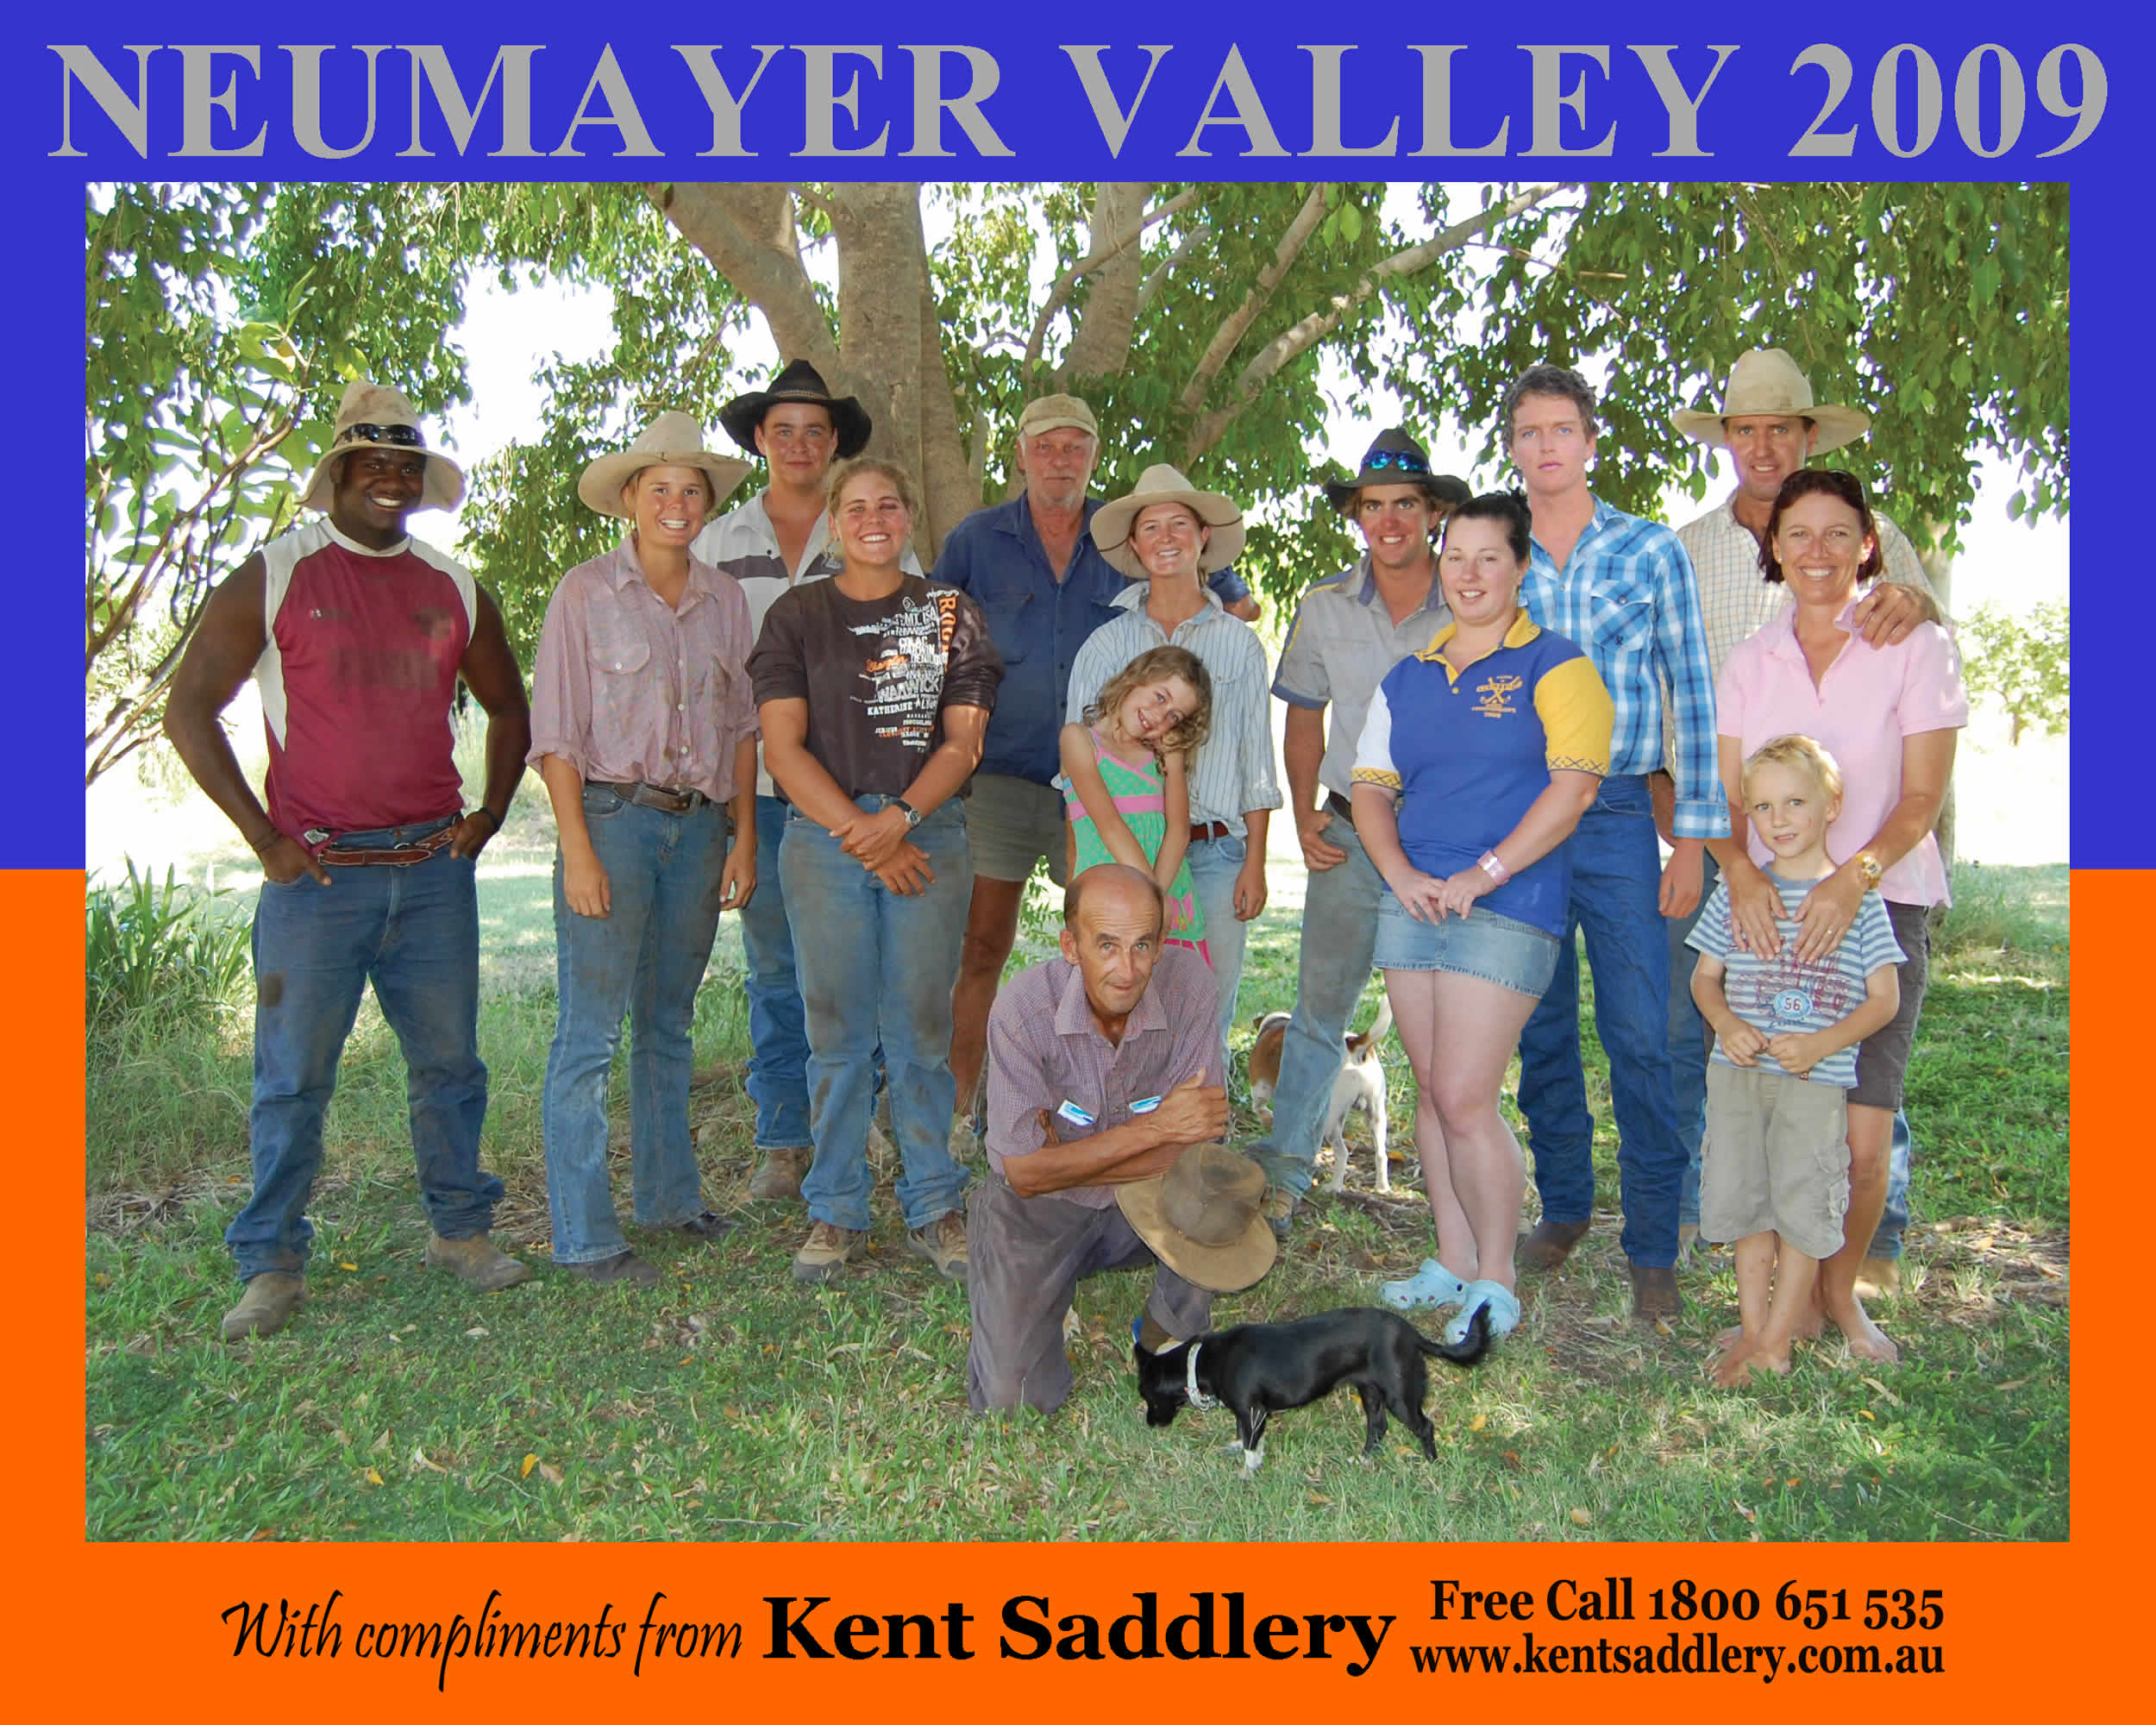 Queensland - Neumayer Valley 17